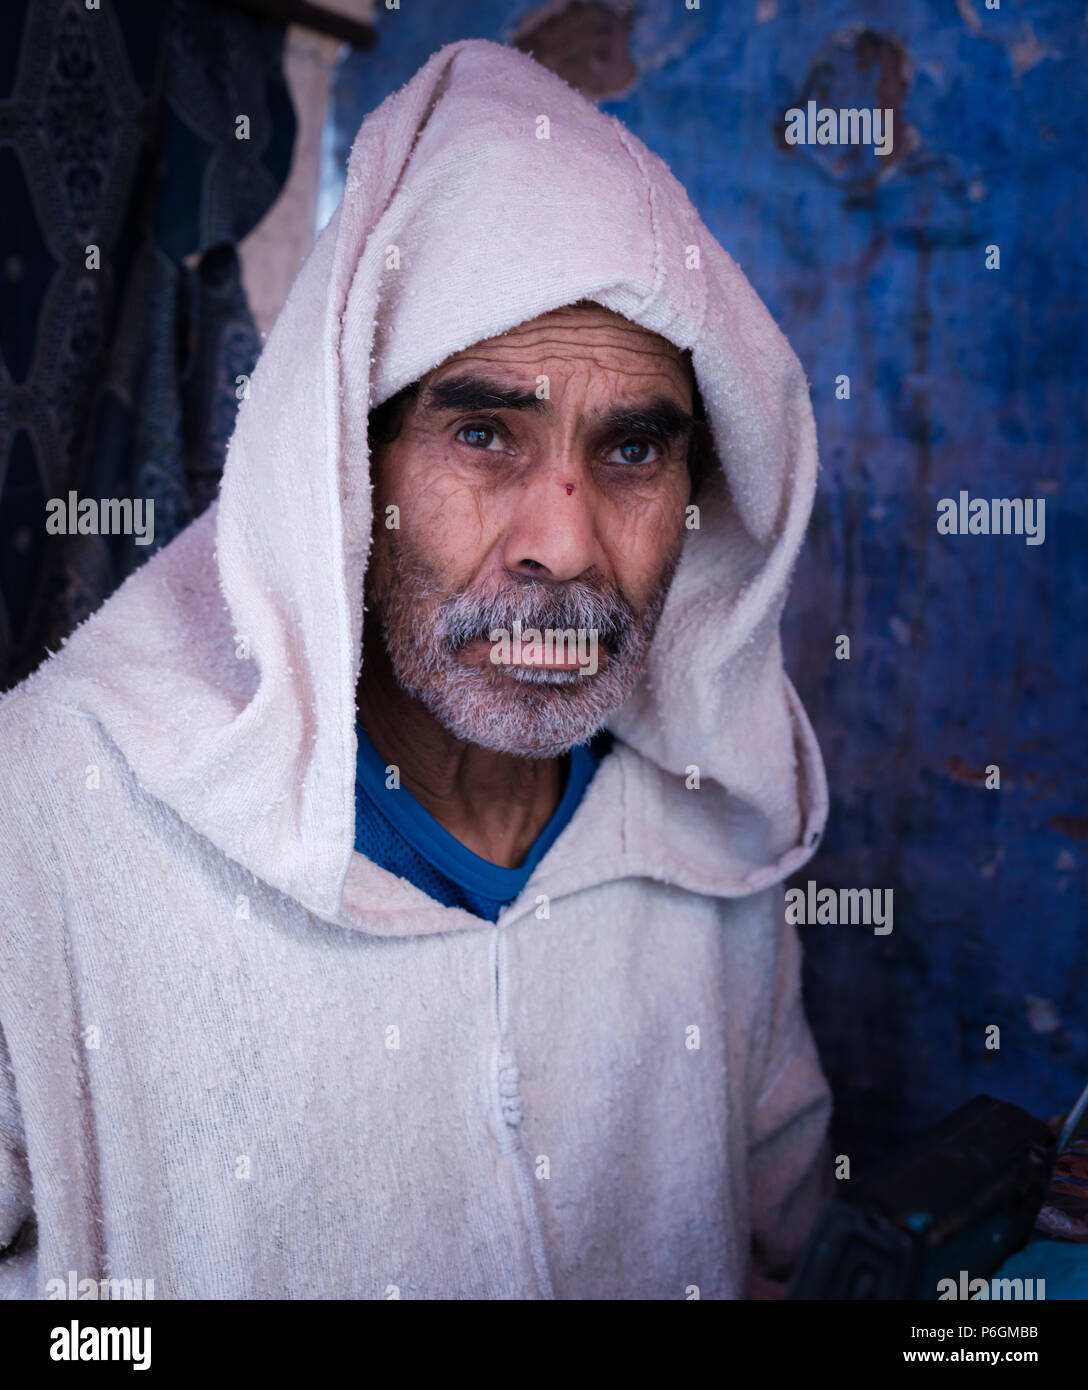 CHEFCHAOUEN, MAROC - CIRCA AVRIL 2017 : Portrait de l'homme marocain dans les rues de Chefchaouen portant une djellaba traditionnelle Banque D'Images